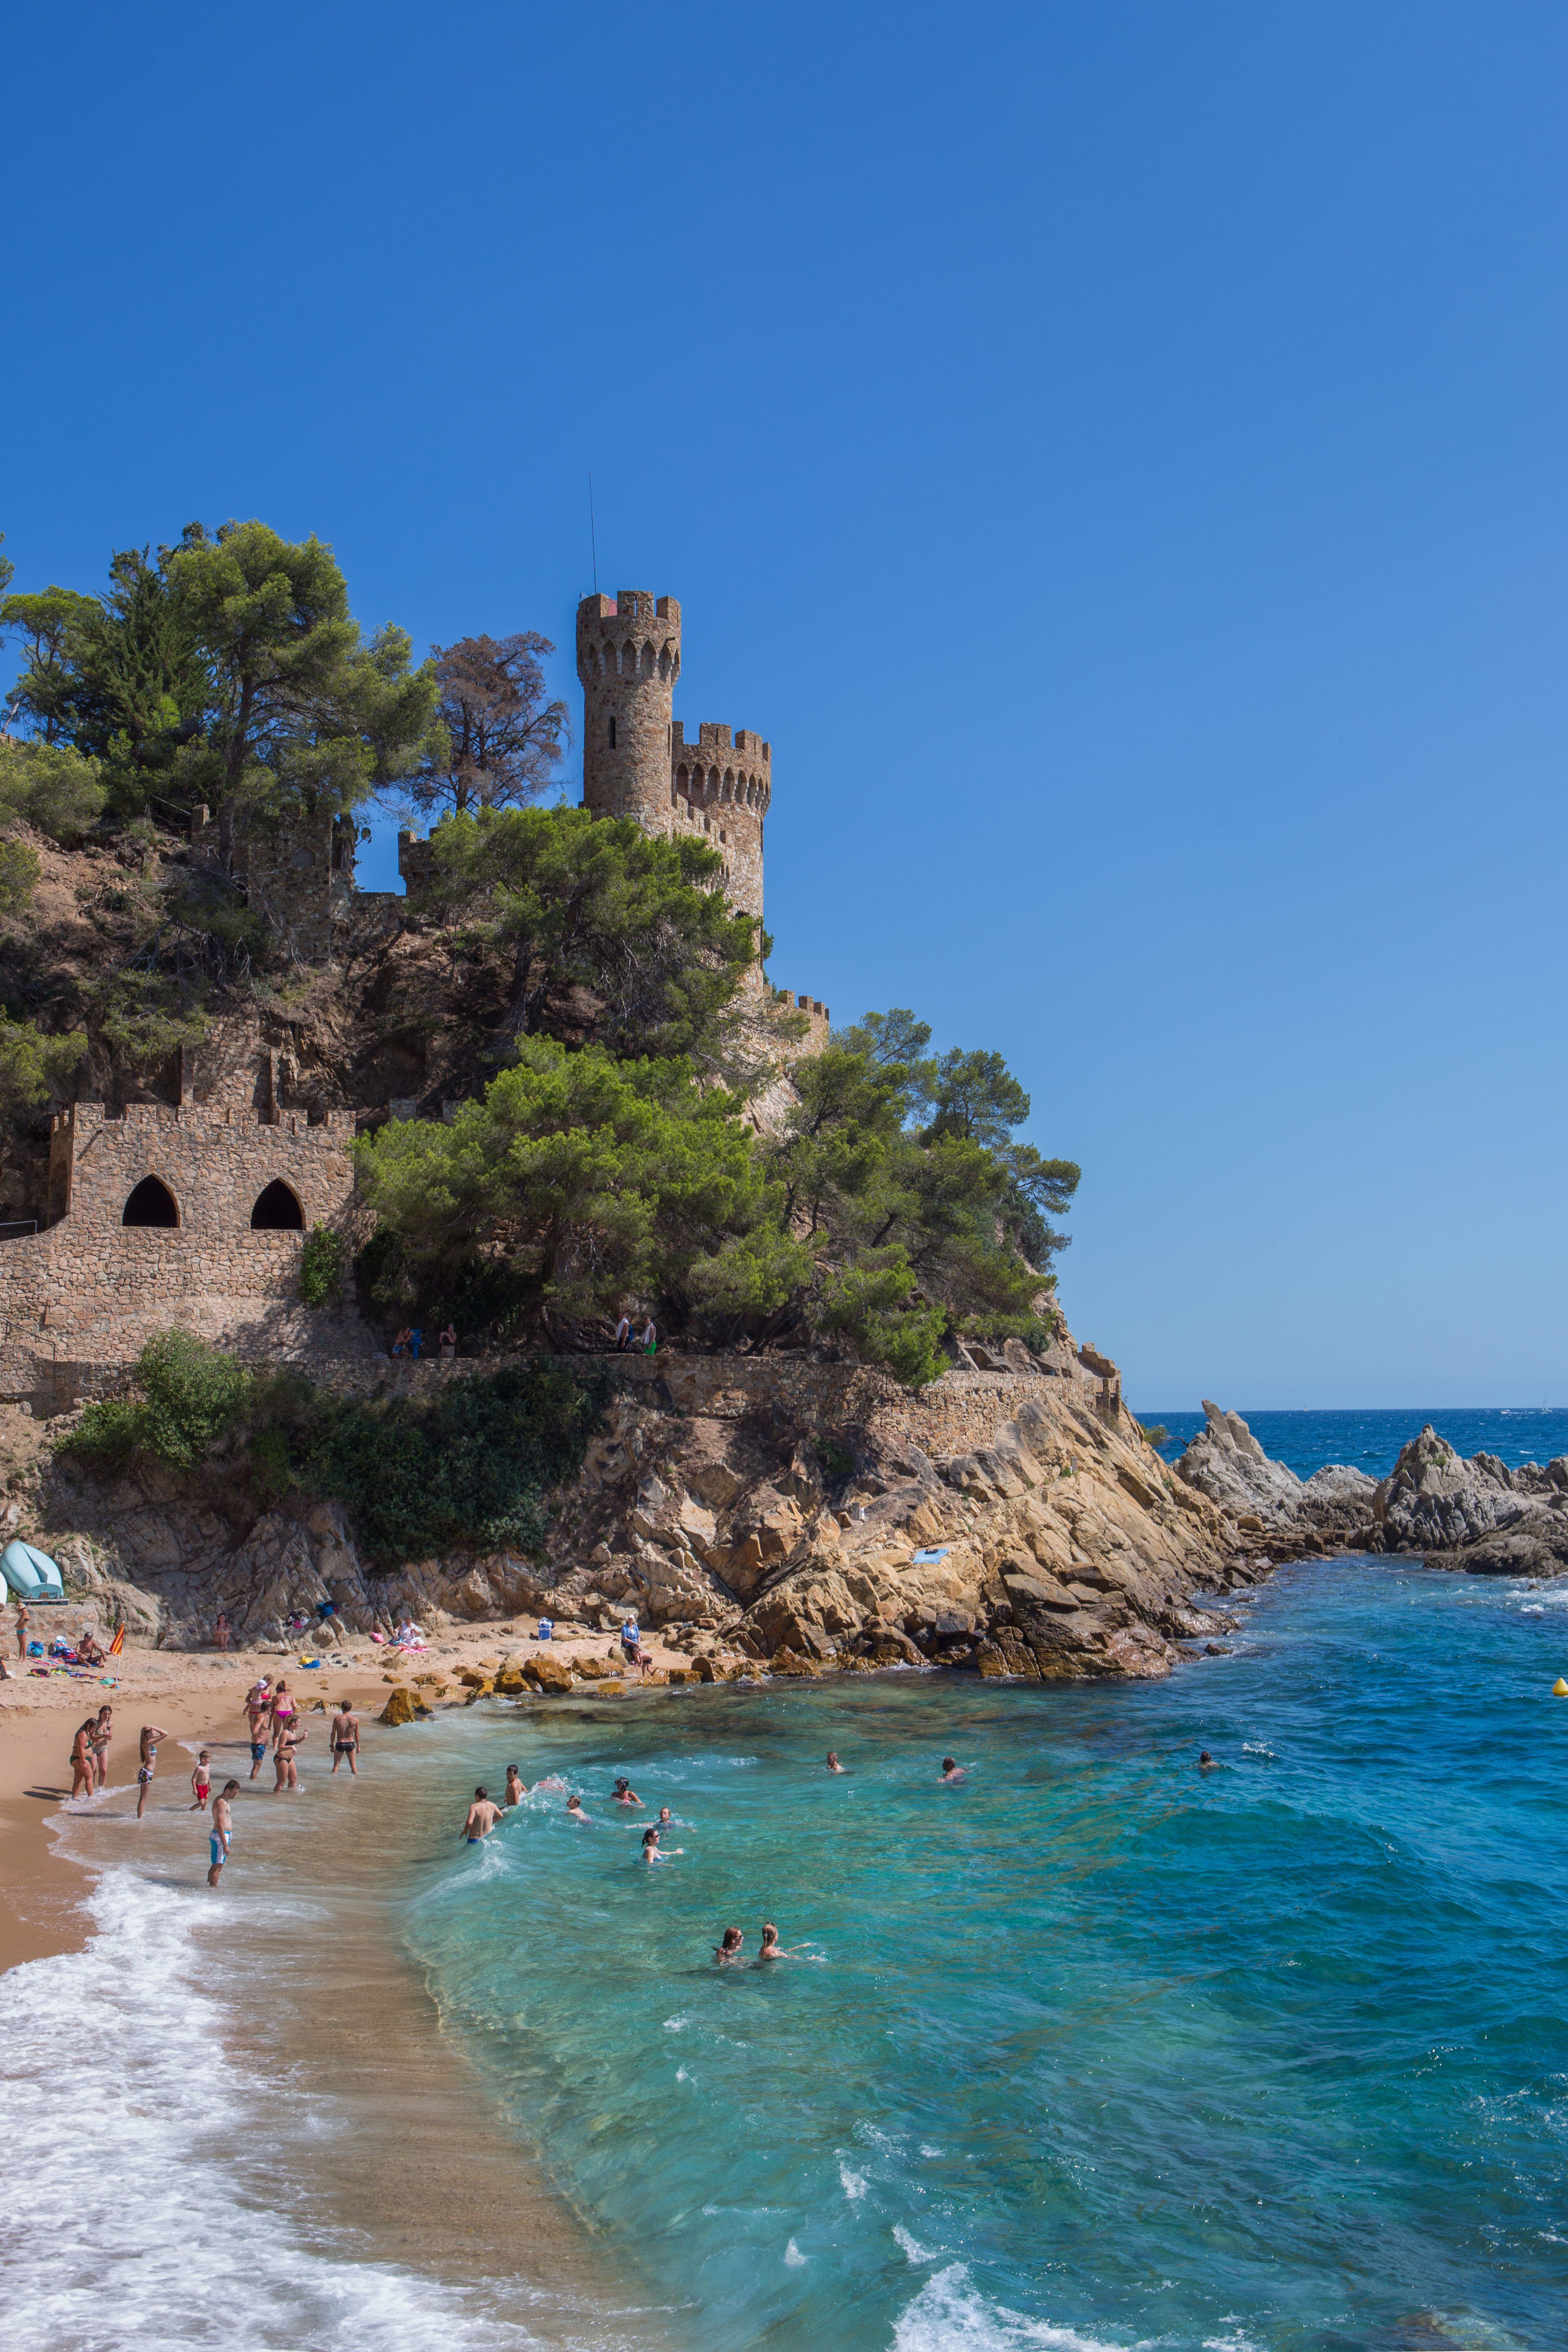 El Castell de Lloret, junto al Mediterráneo, es uno de los lugares más fotografiados de la Costa Brava.